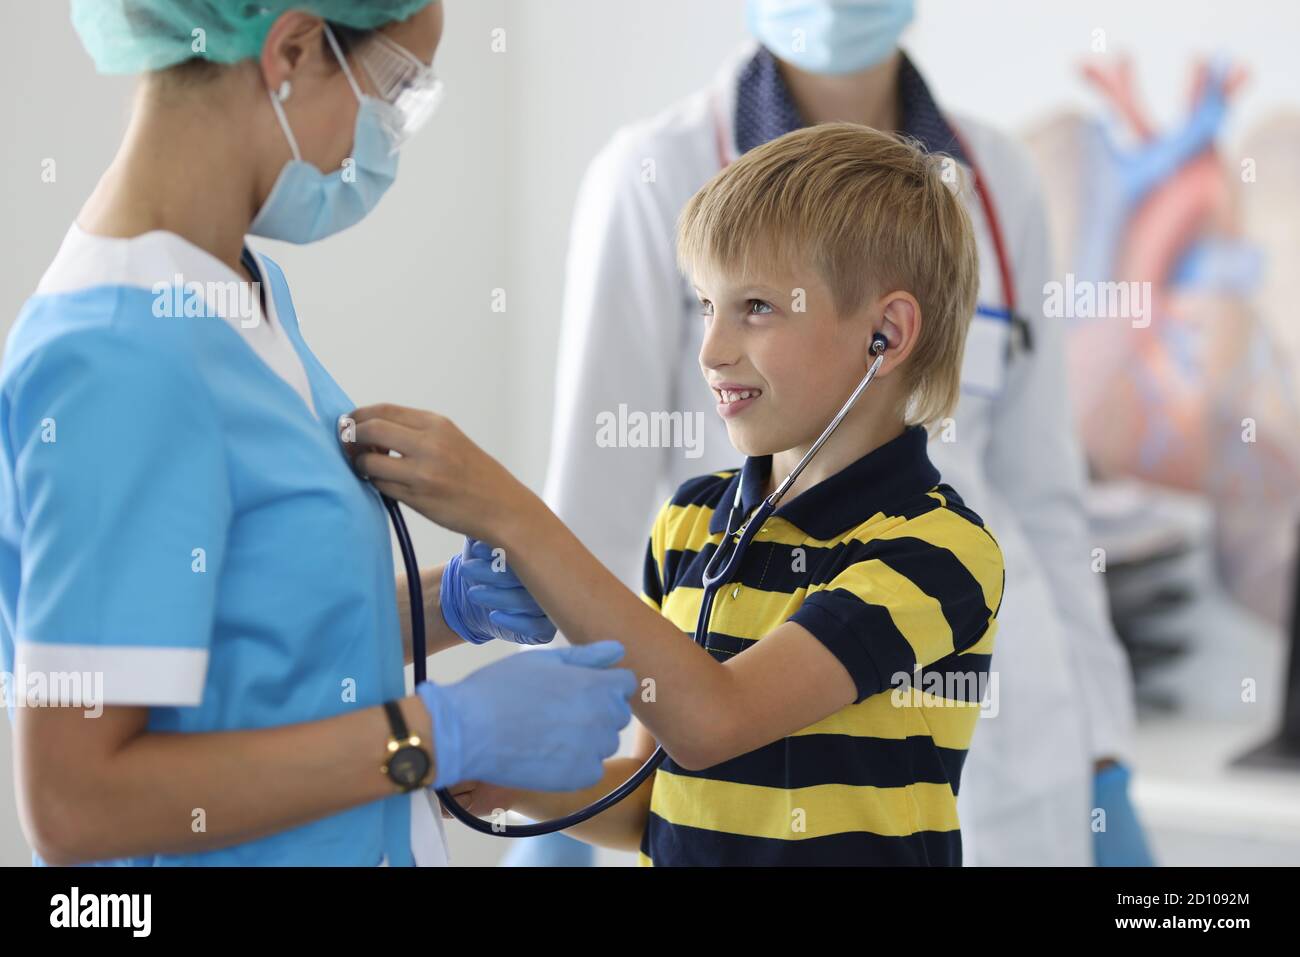 Junge im gestreiften T-Shirt mit schwarzem Stethoskop dem Herzschlag des Arztes zuhören. Stockfoto